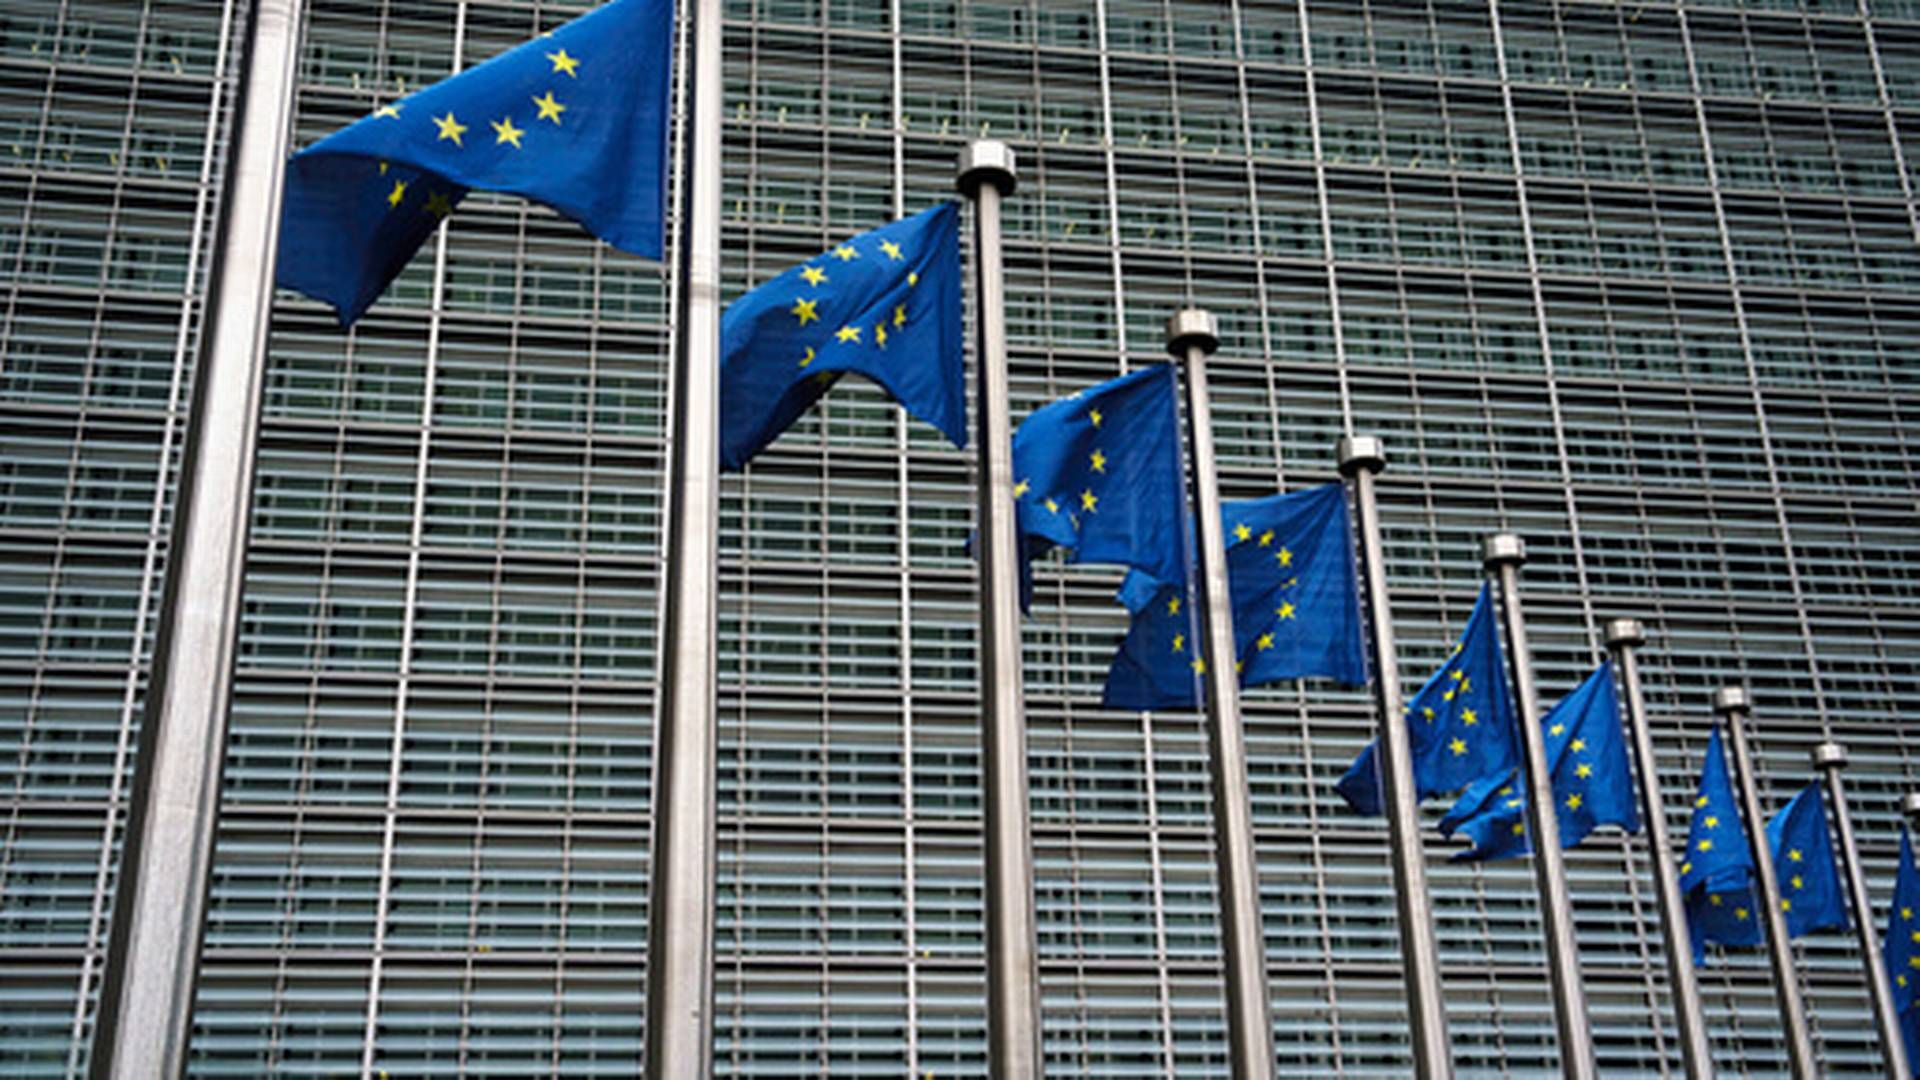 140 ANSATTE: Kontoret skal bestå av 140 ansatte, og etableres innenfor EU-kommisjonen, som er EUs utøvende organ. | Foto: Foto: Cornelius Poppe / NTB